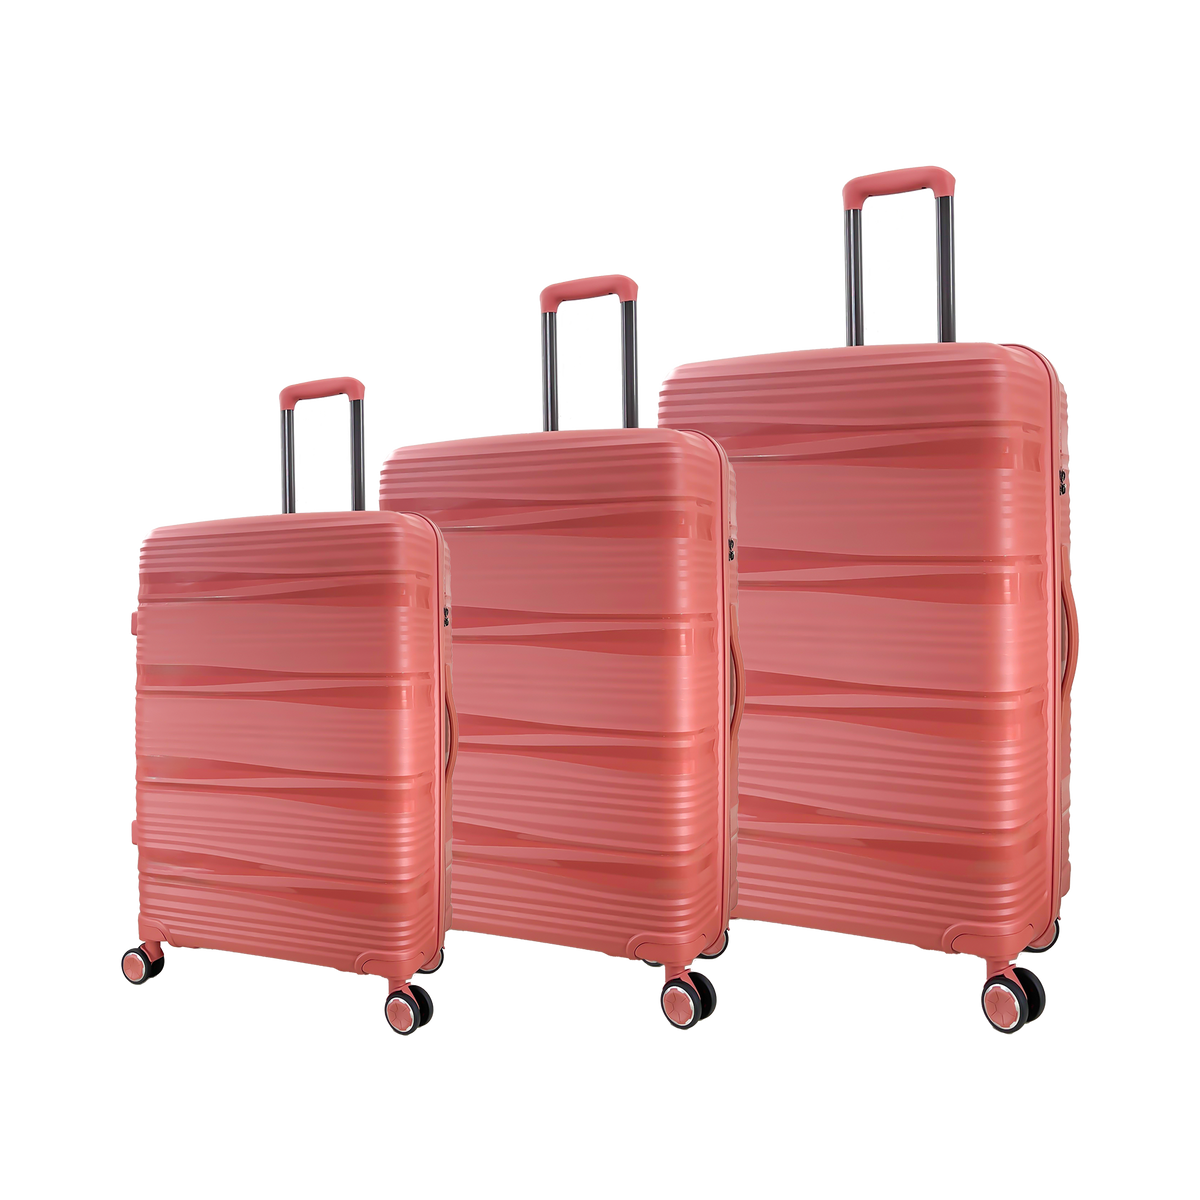 Candado TSA para maleta Color Rojo